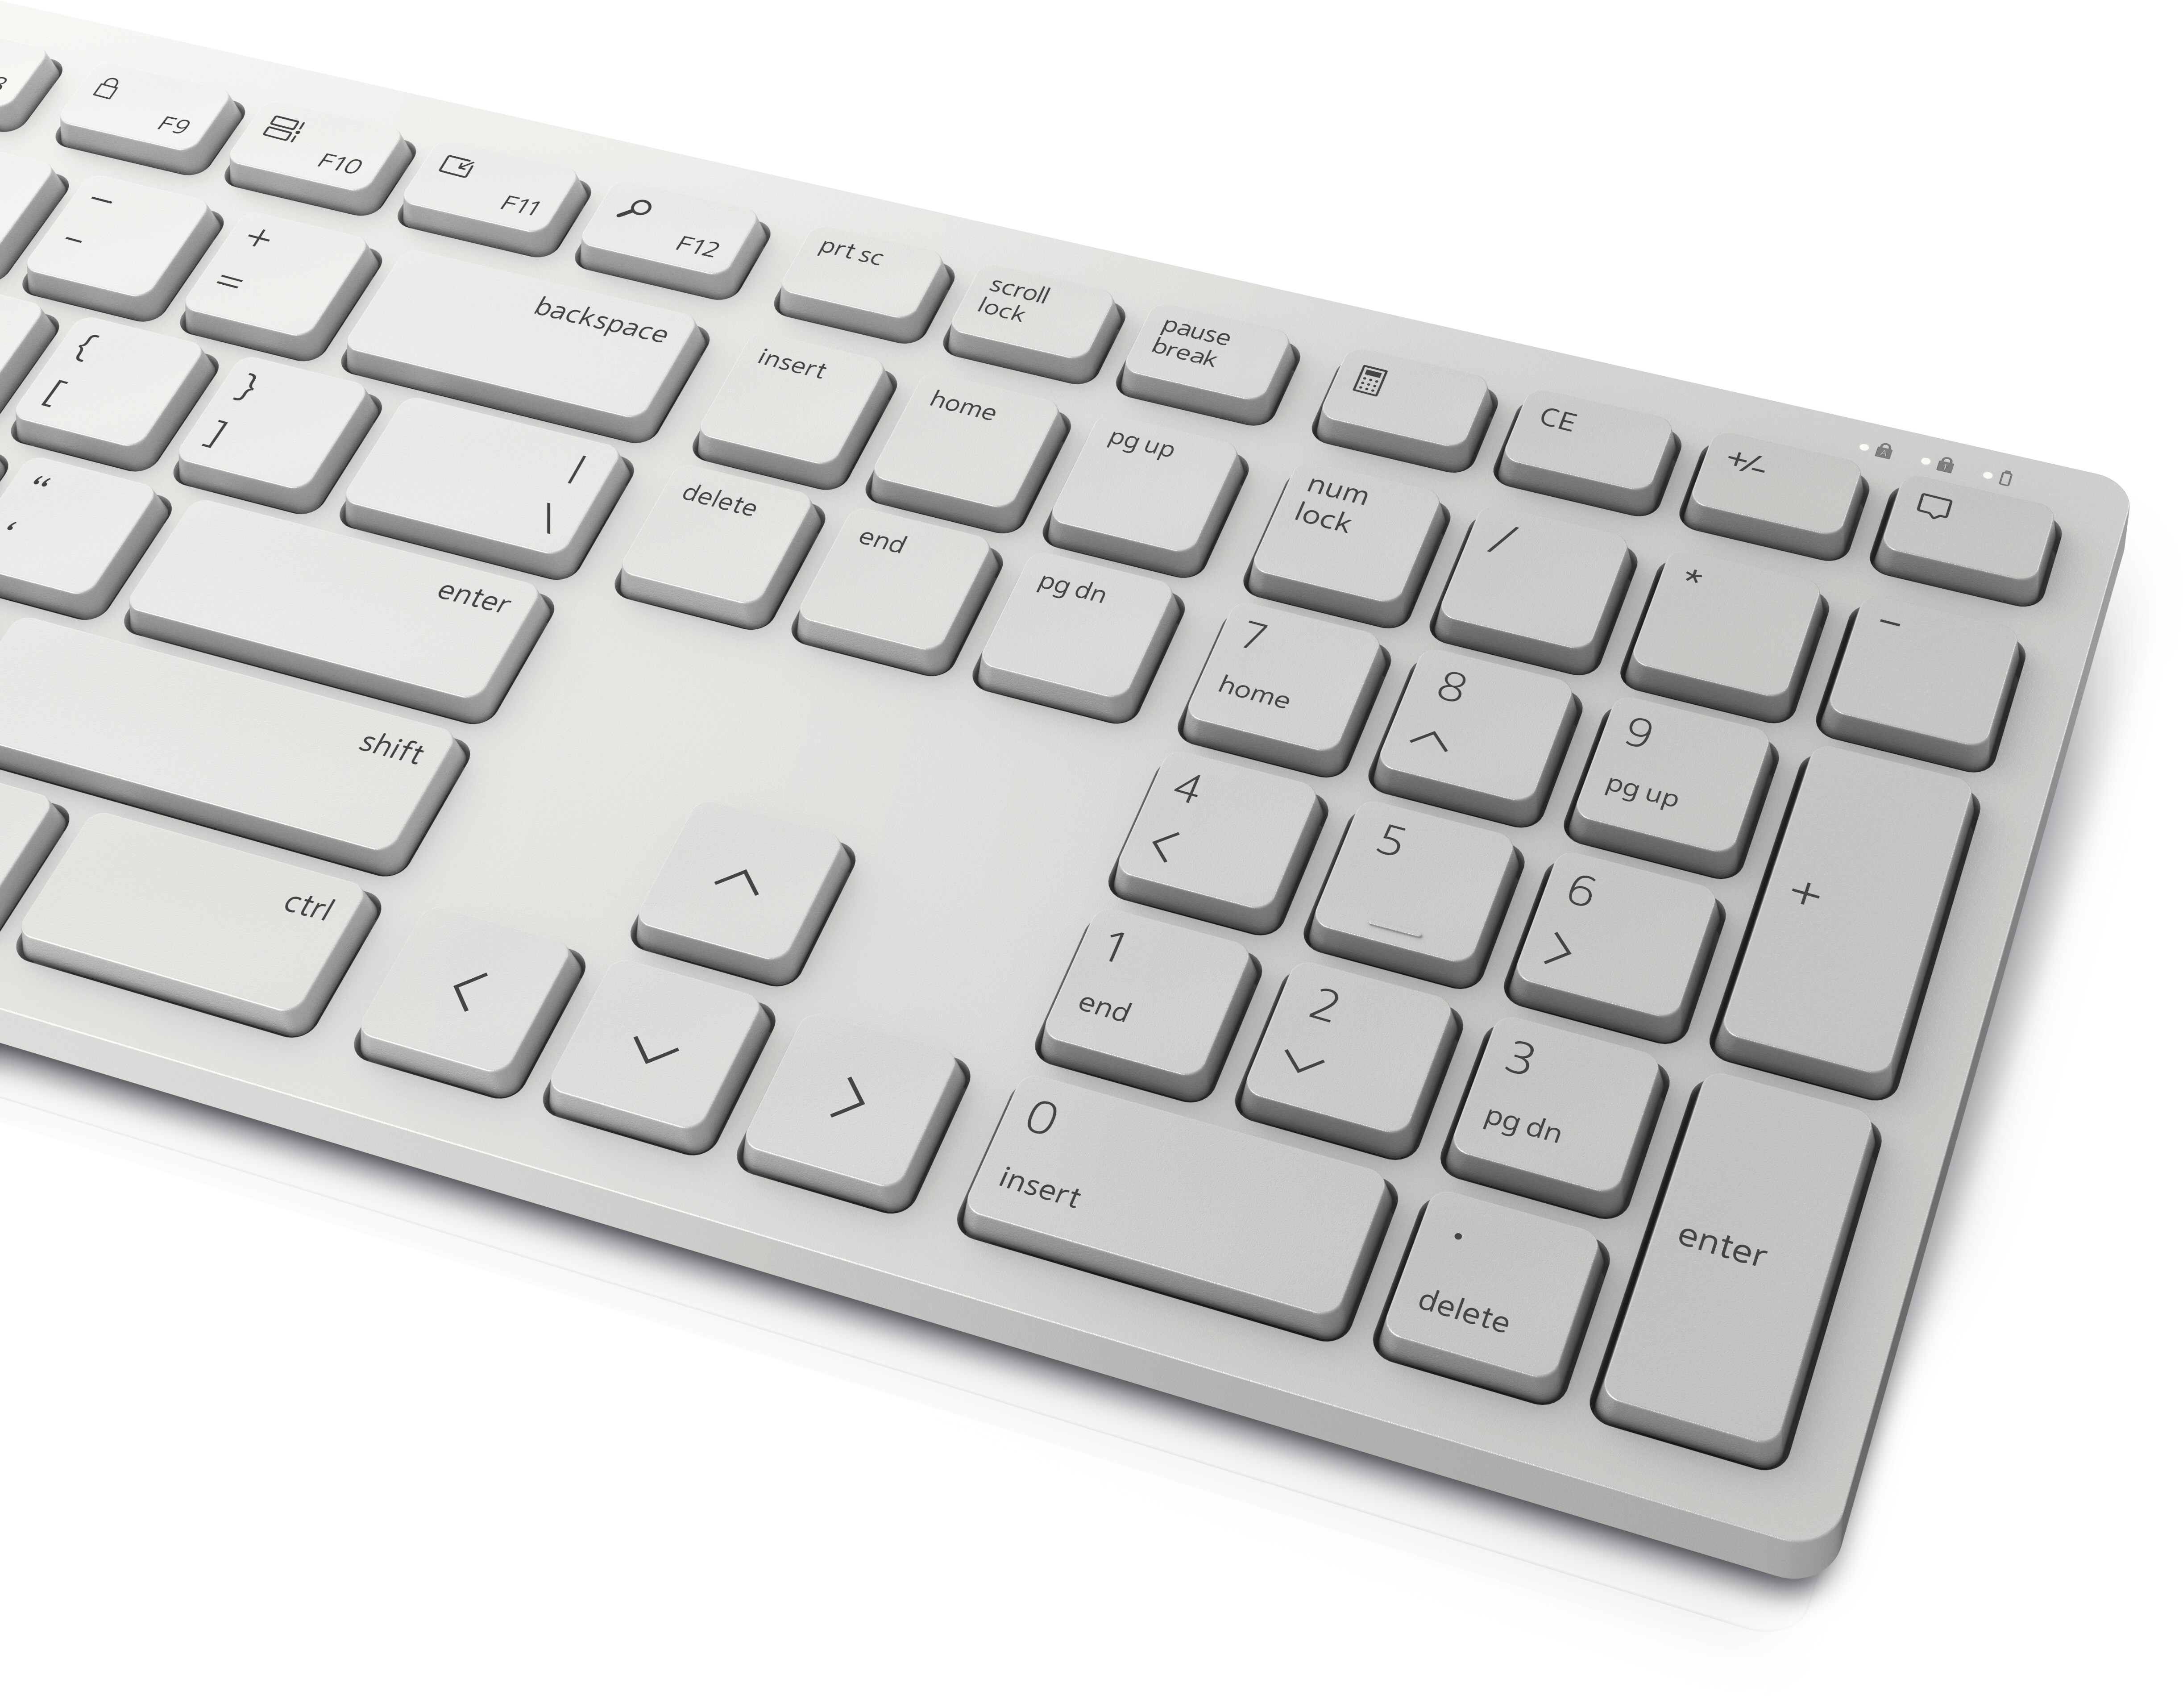 Hol Productie genade Dell Pro draadloos toetsenbord en draadloze muis – KM5221W – Belgisch  (AZERTY) – wit | Dell Nederland